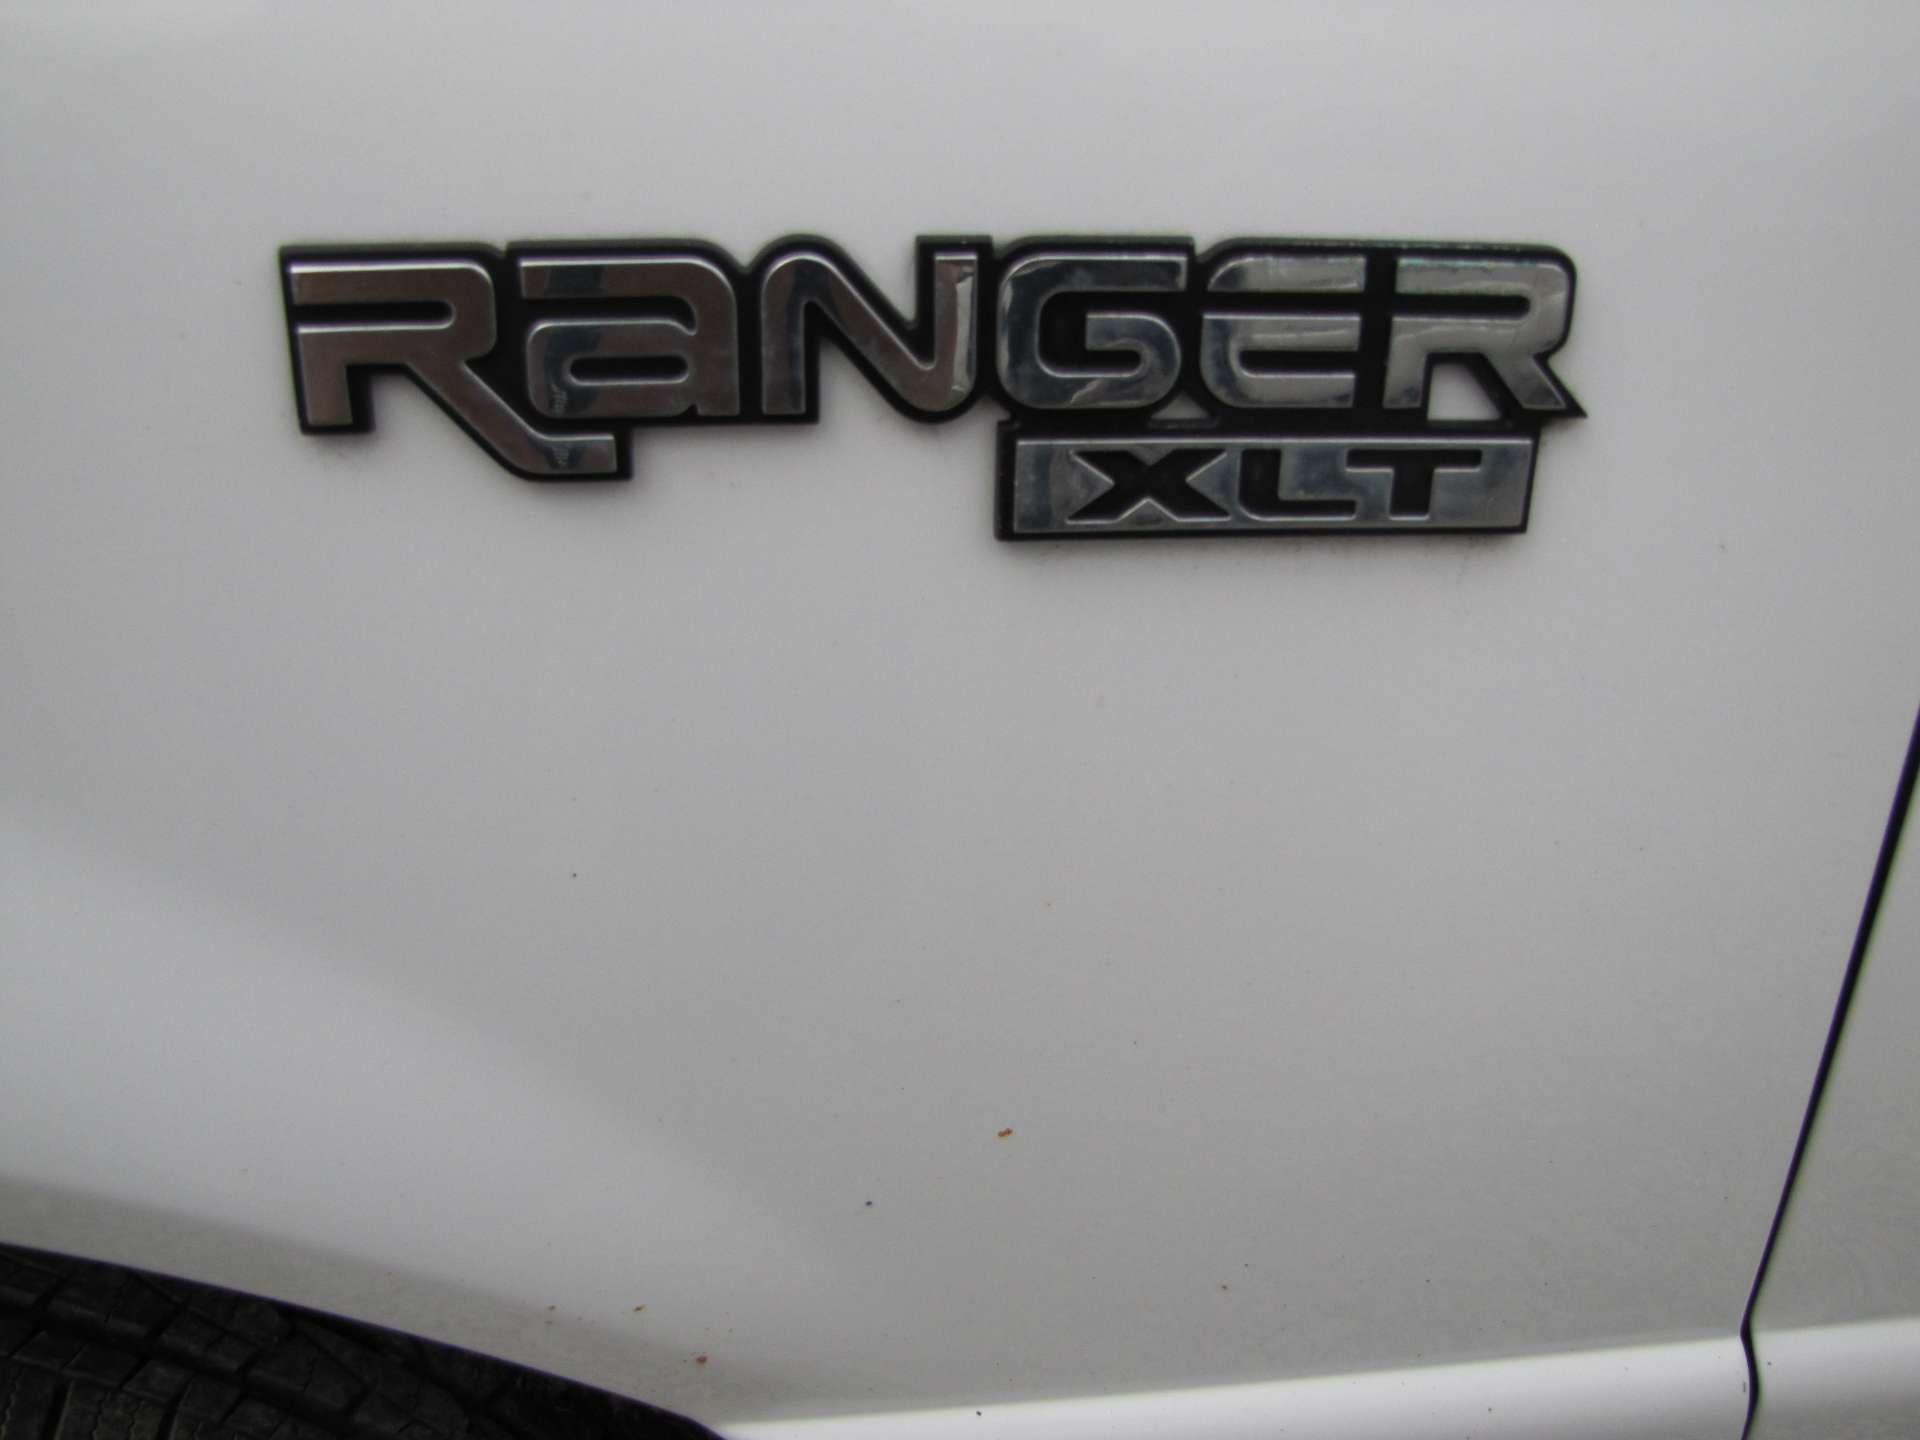 2003 Ford Ranger XLT pickup truck - Image 42 of 44